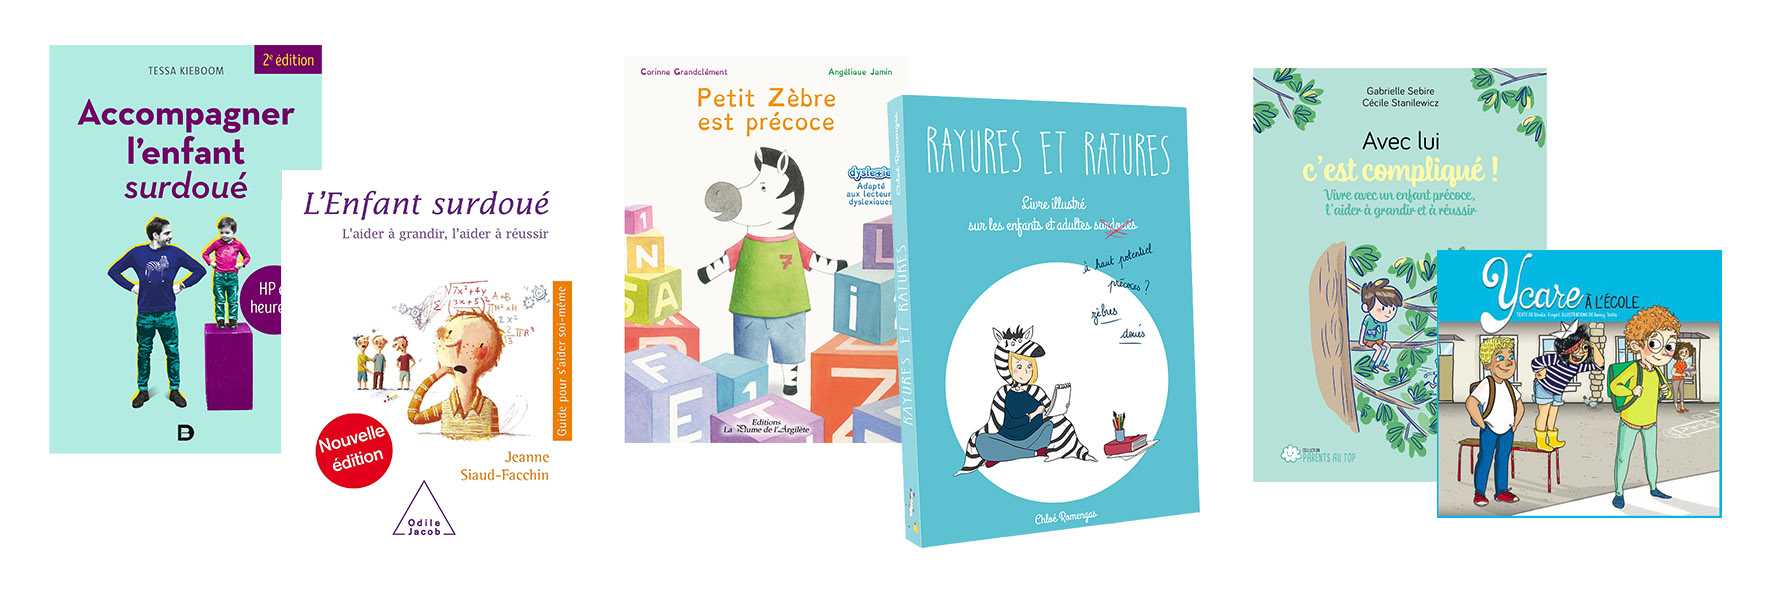 Les livres pour accompagner les enfants surdoués - Rayures et Ratures